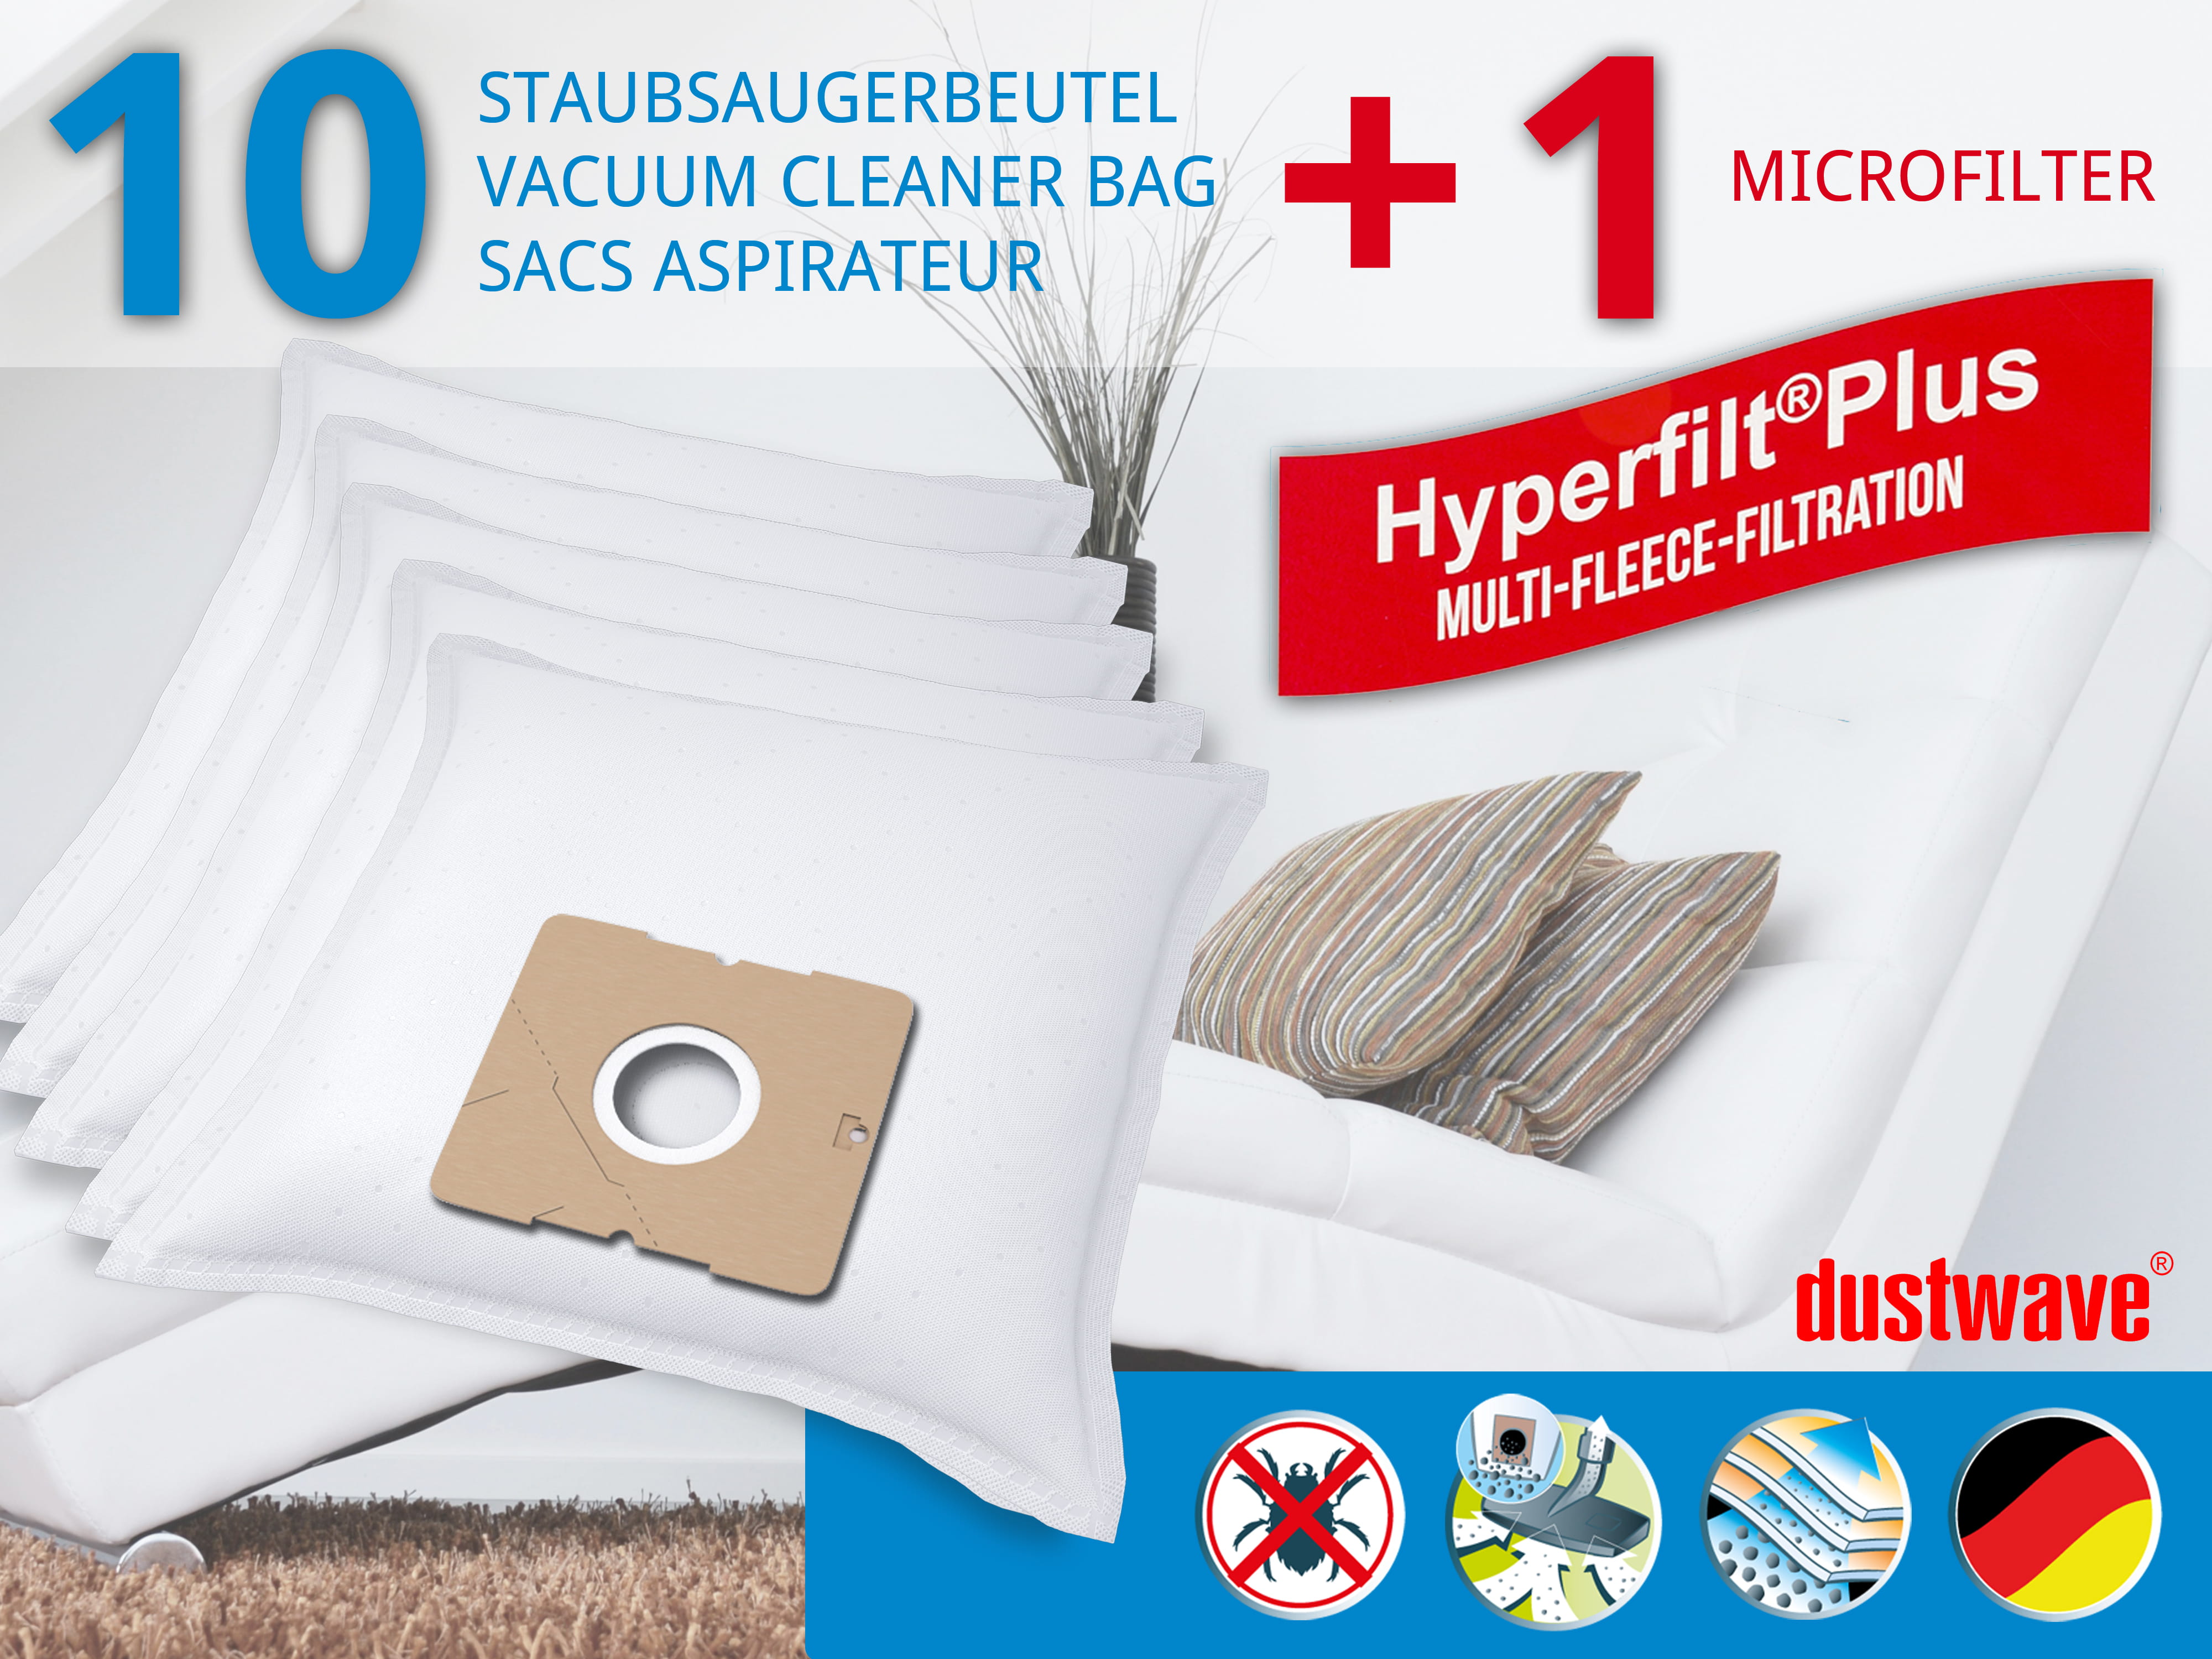 Dustwave® 10 Staubsaugerbeutel für Bob Home 2461 - hocheffizient, mehrlagiges Mikrovlies mit Hygieneverschluss - Made in Germany